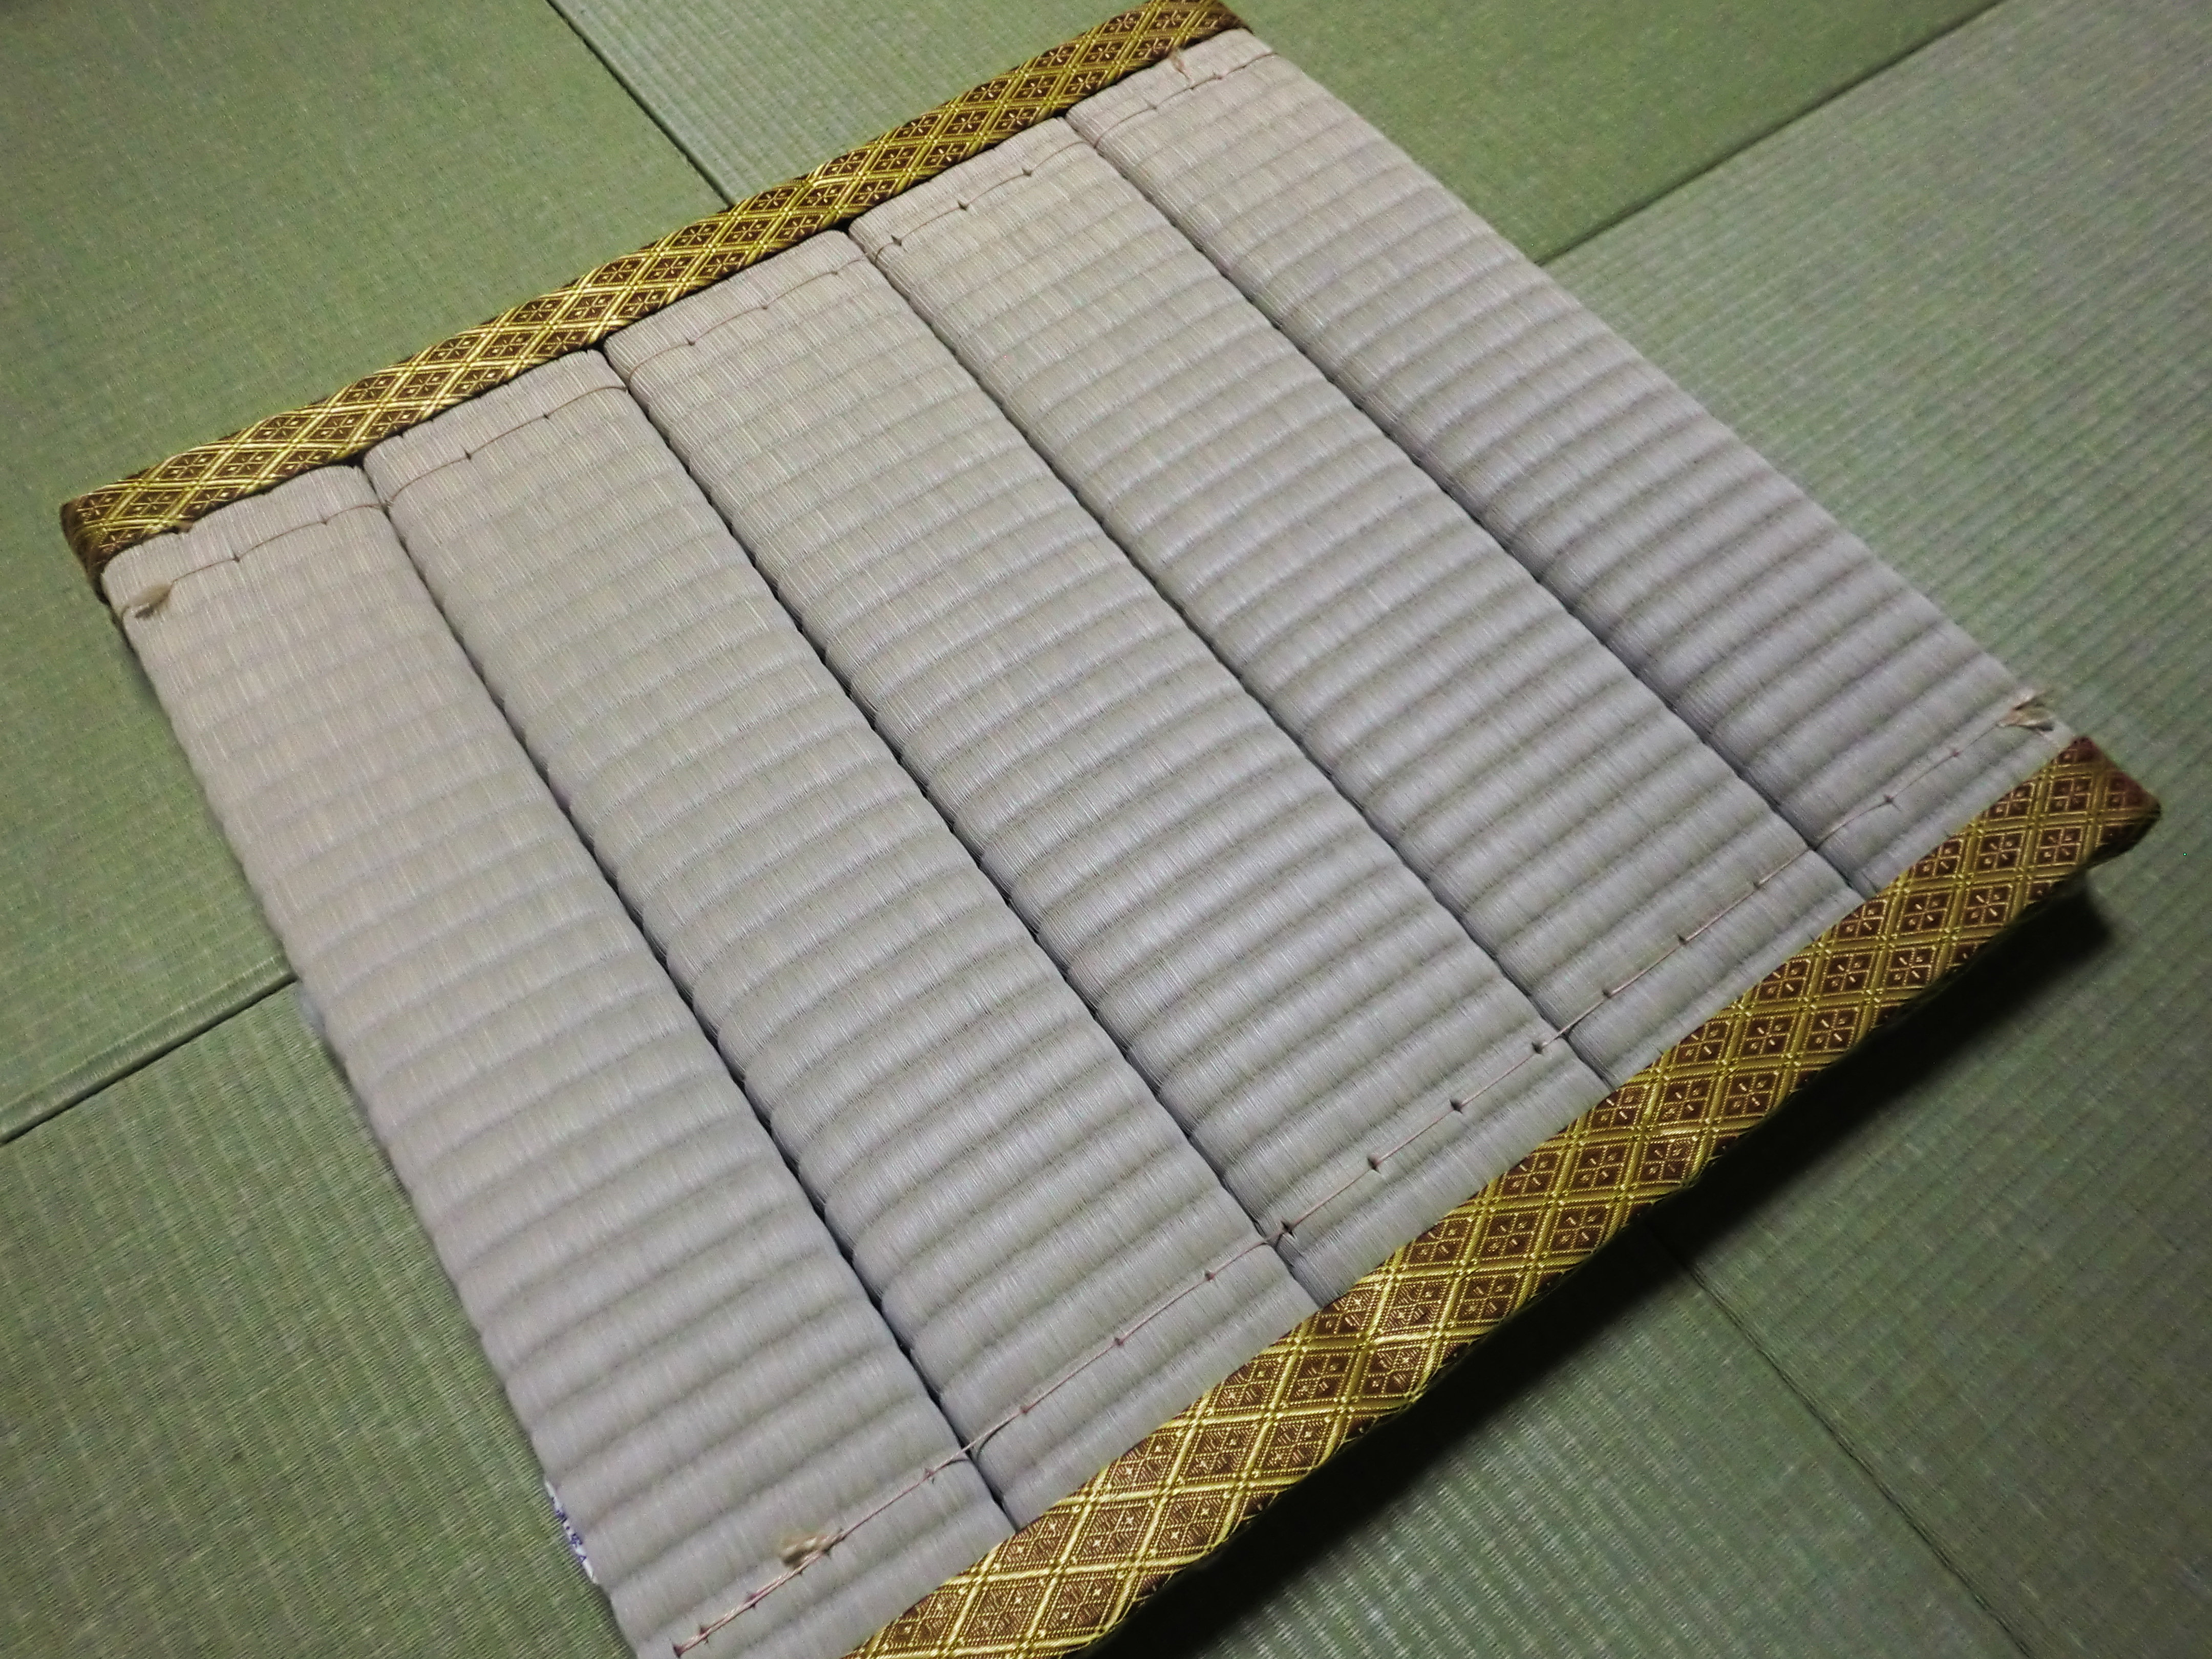 座布団畳2を作成してみました。